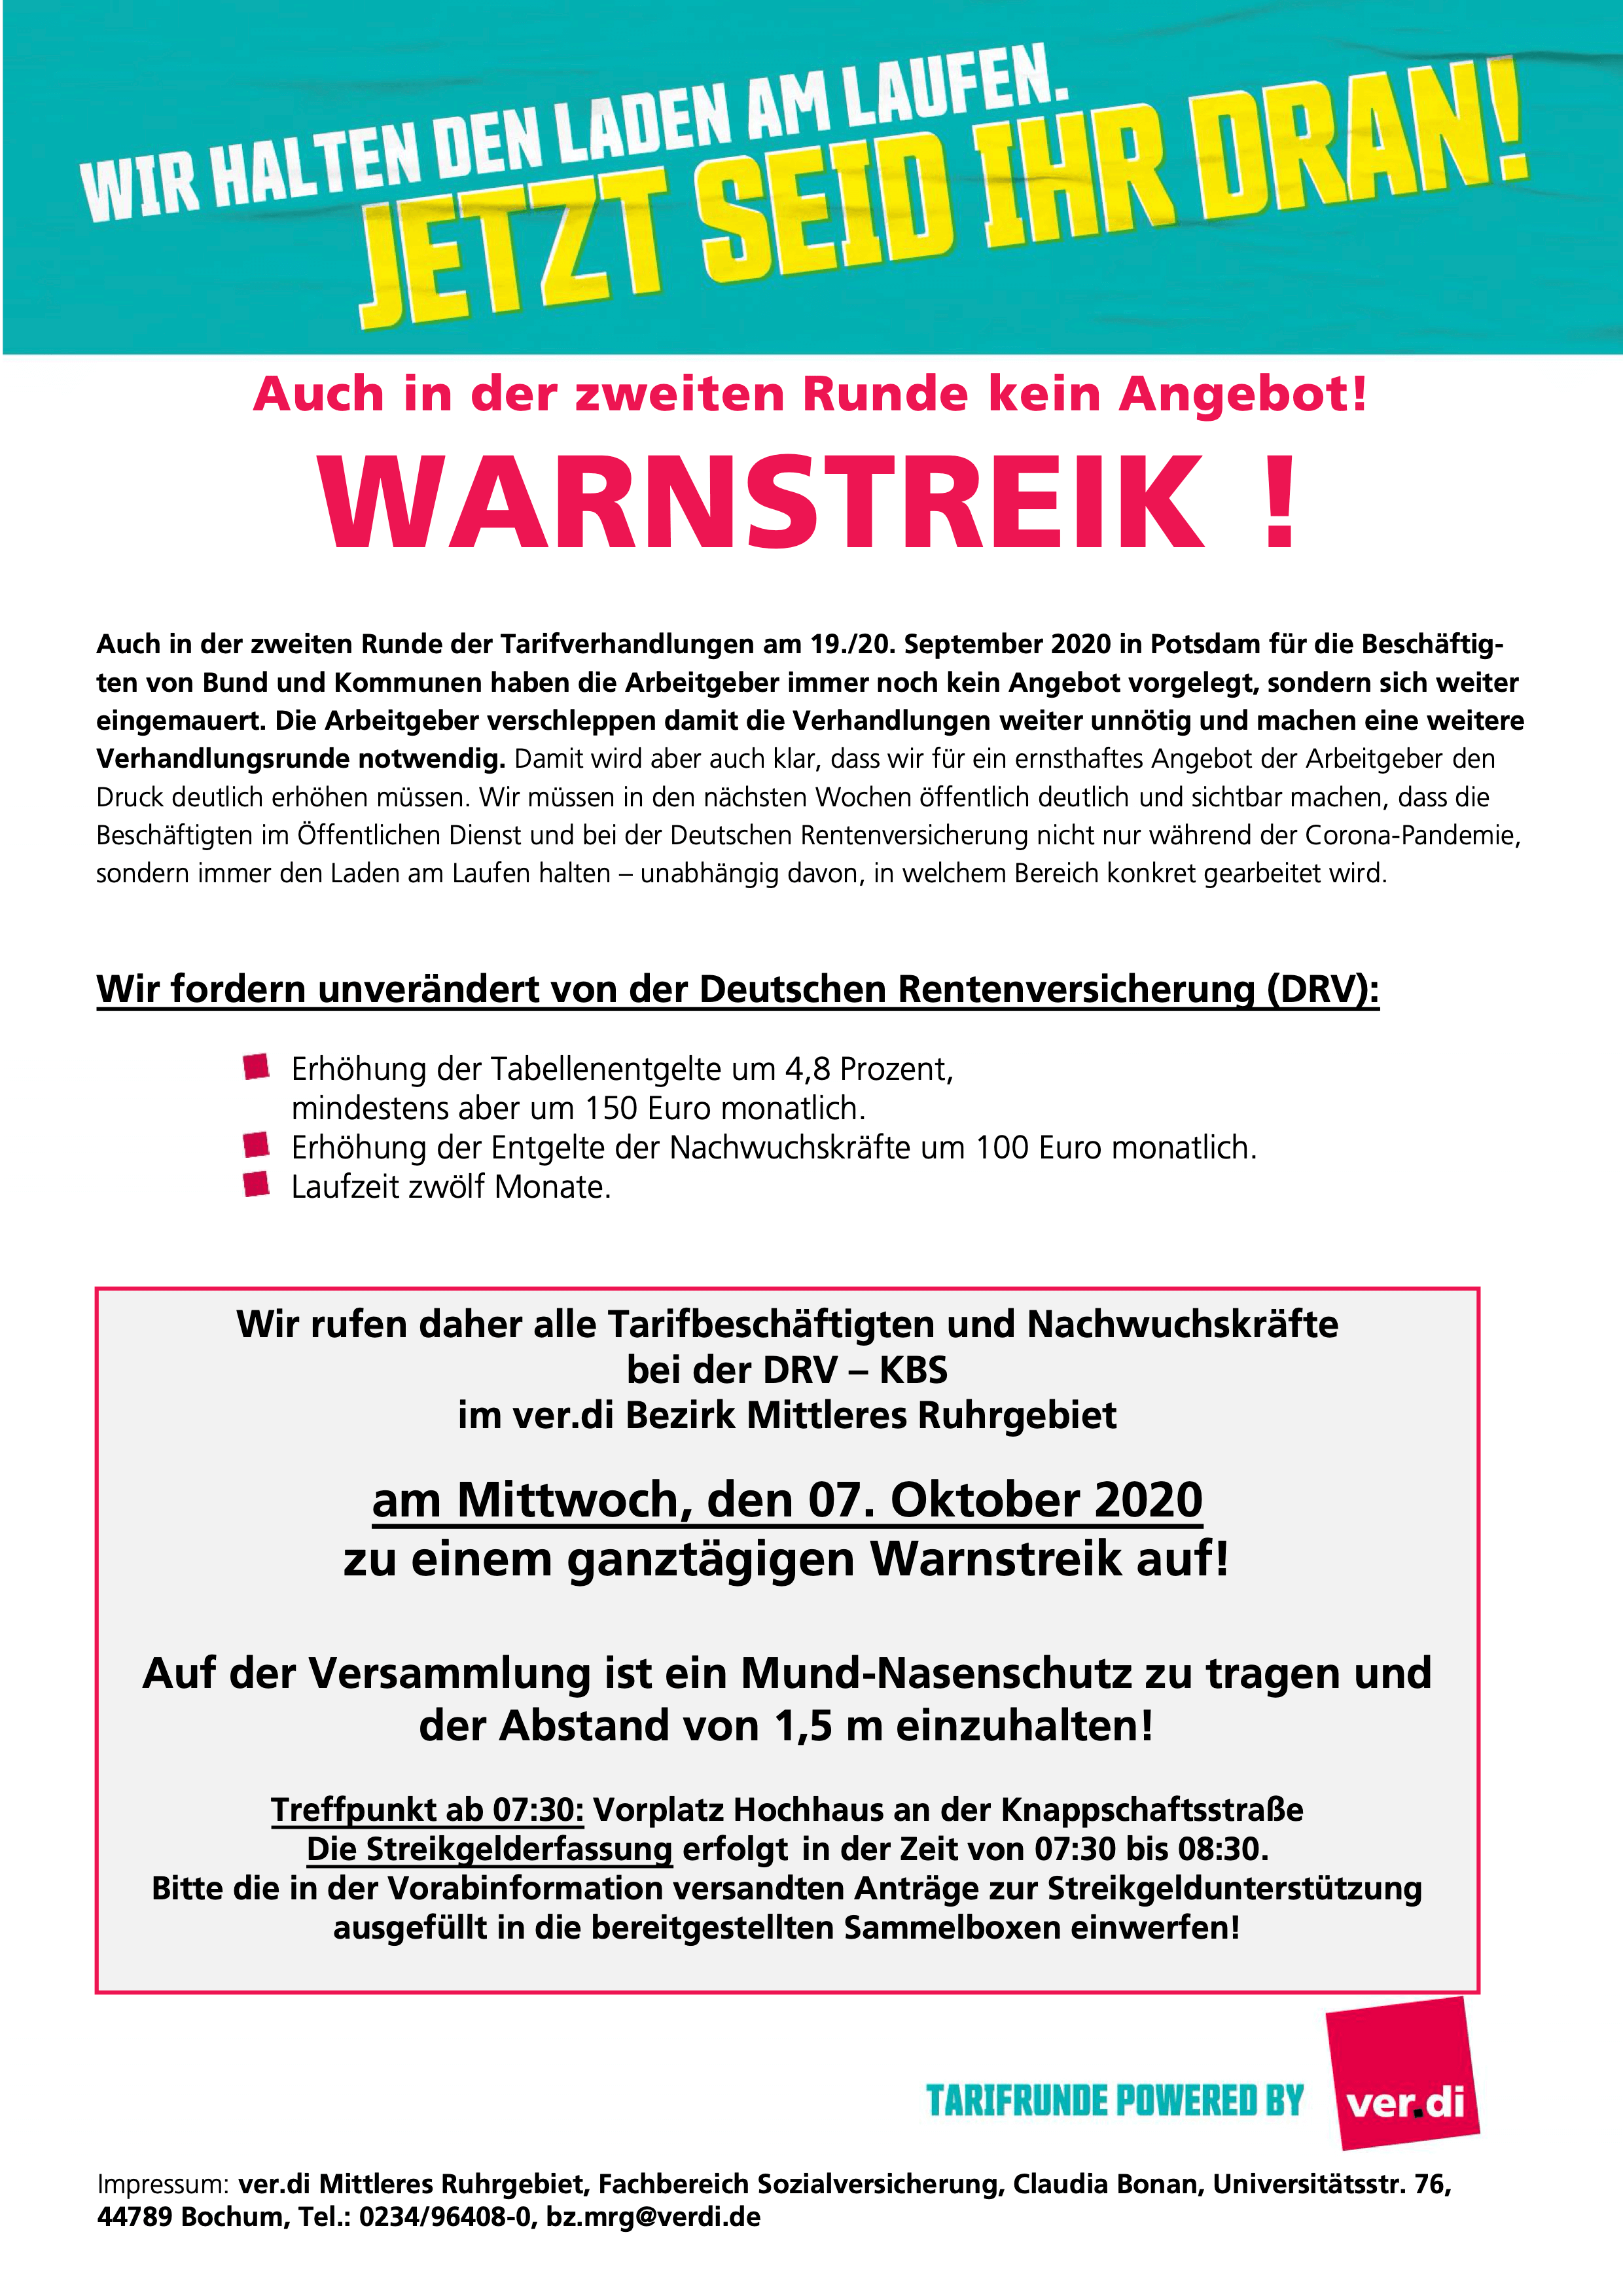 Aufruf von ver.di: Warnstreik bei der Deutschen Rentenversicherung Knappschaft-Bahn-See am 07.10.2020